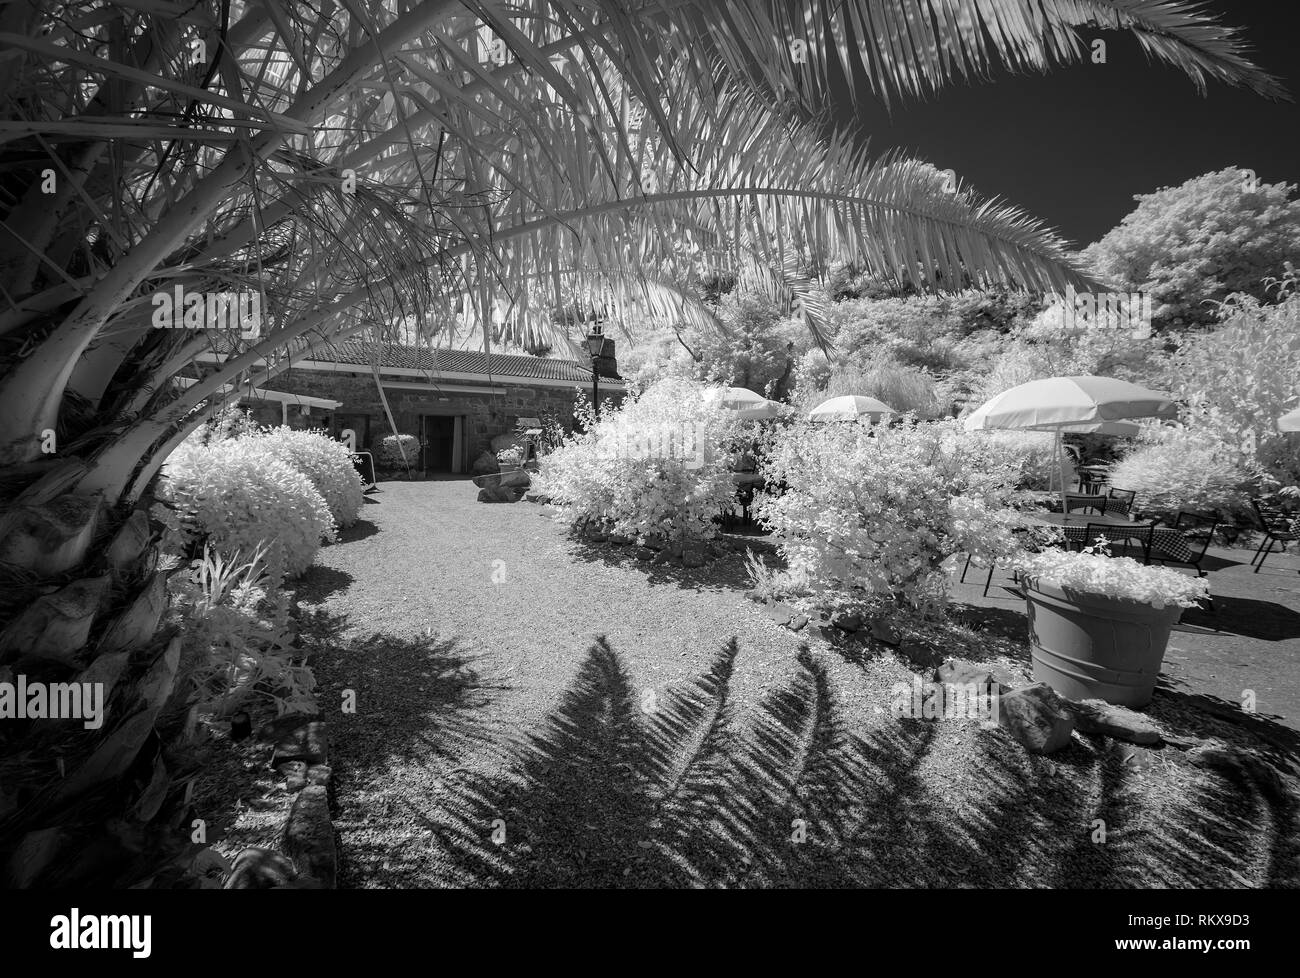 Une image monochrome infrarouge de l'ancienne grange et jardins Restaurant Off-License sur Alderney, Channel Isands. Banque D'Images